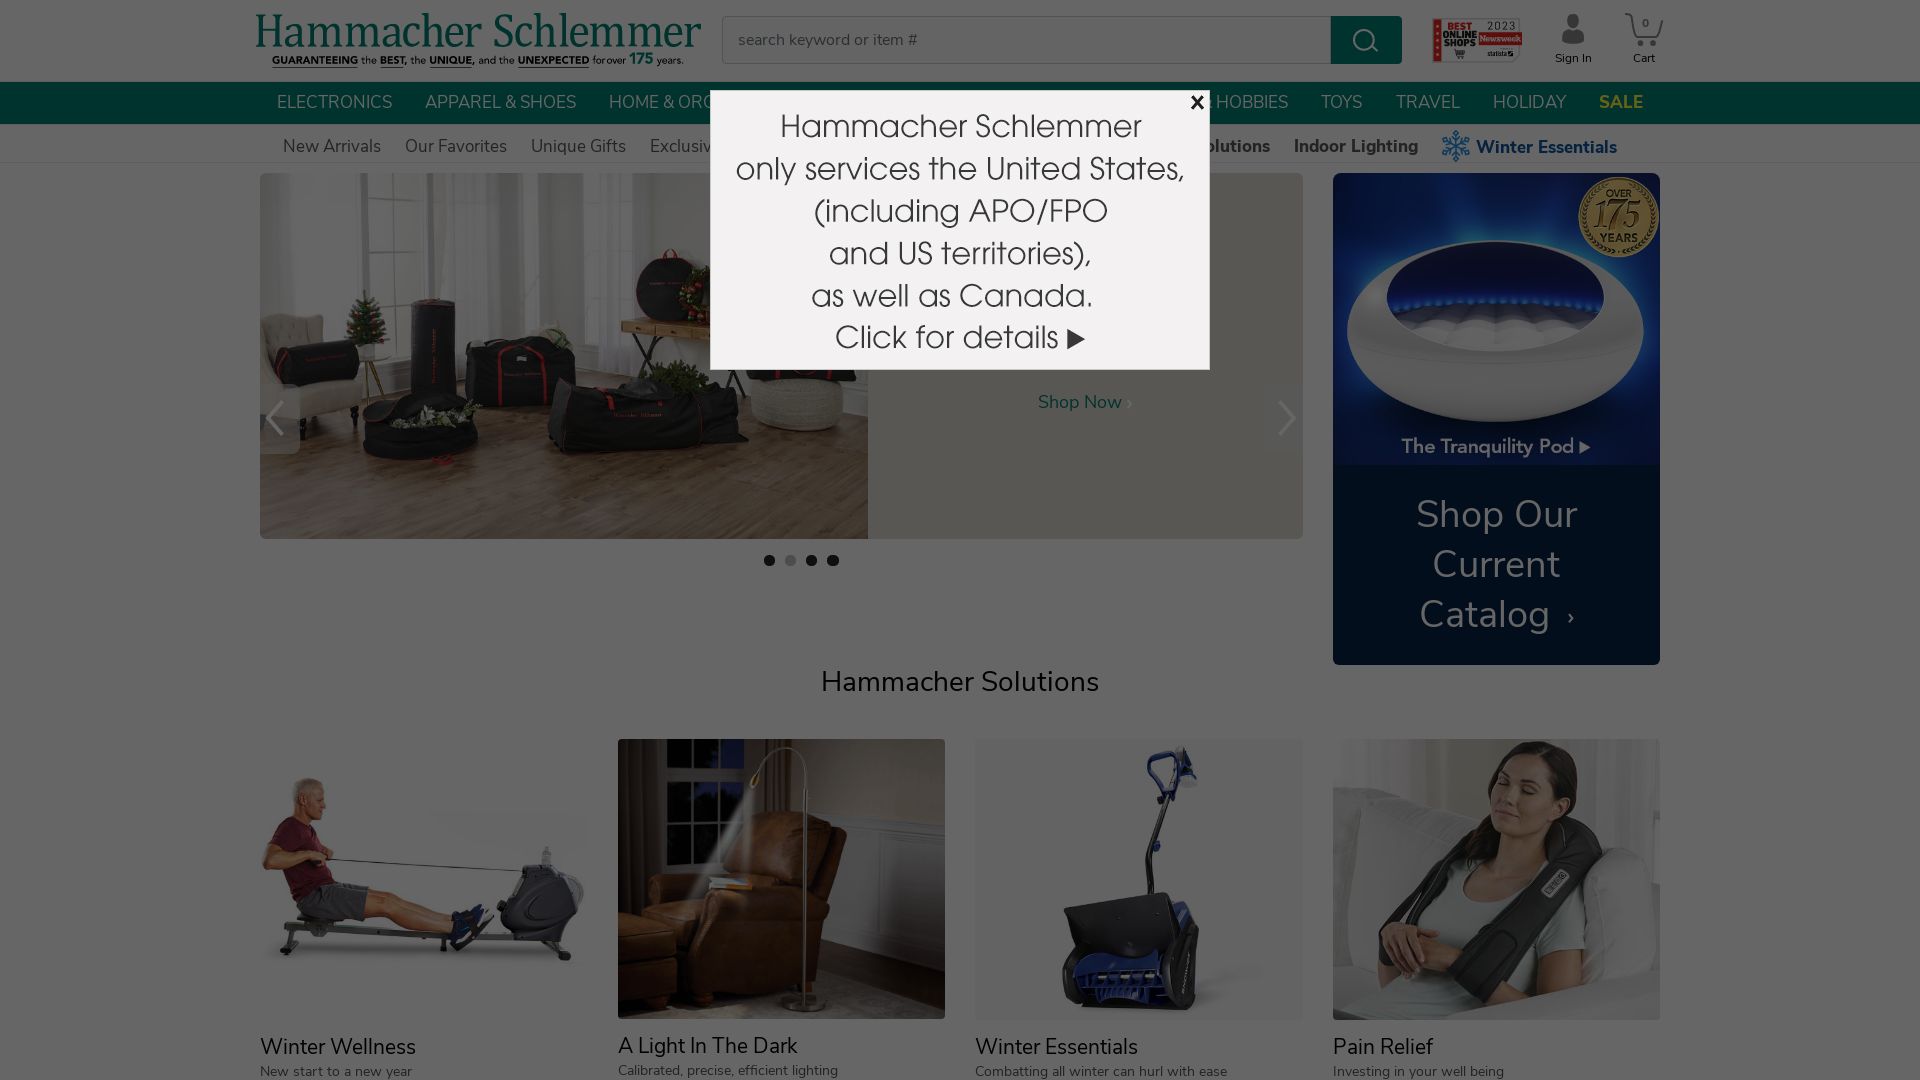 Website status hammacher.com is   ONLINE